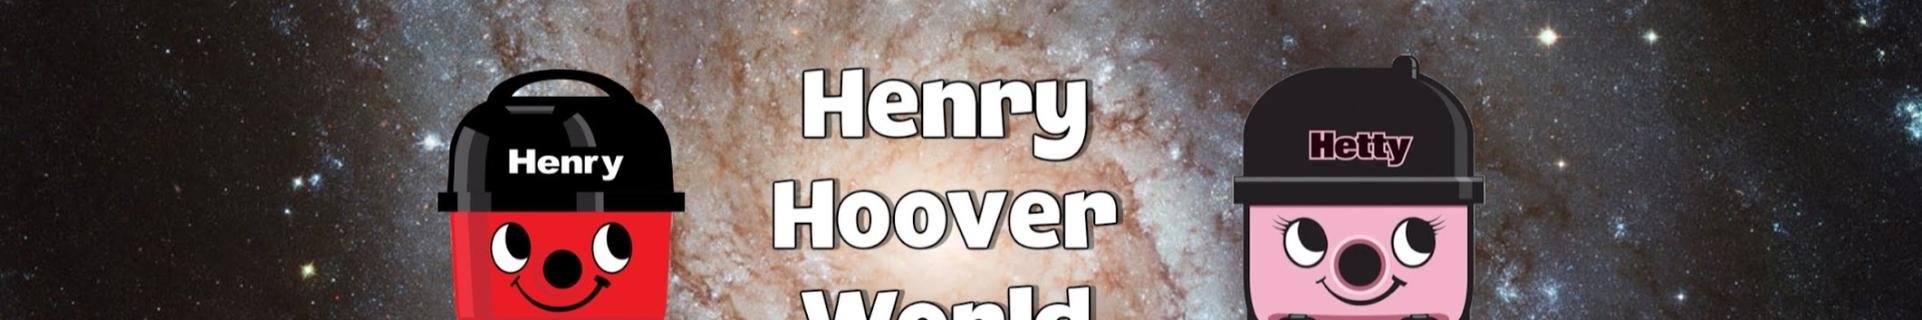 Henry Hoover World